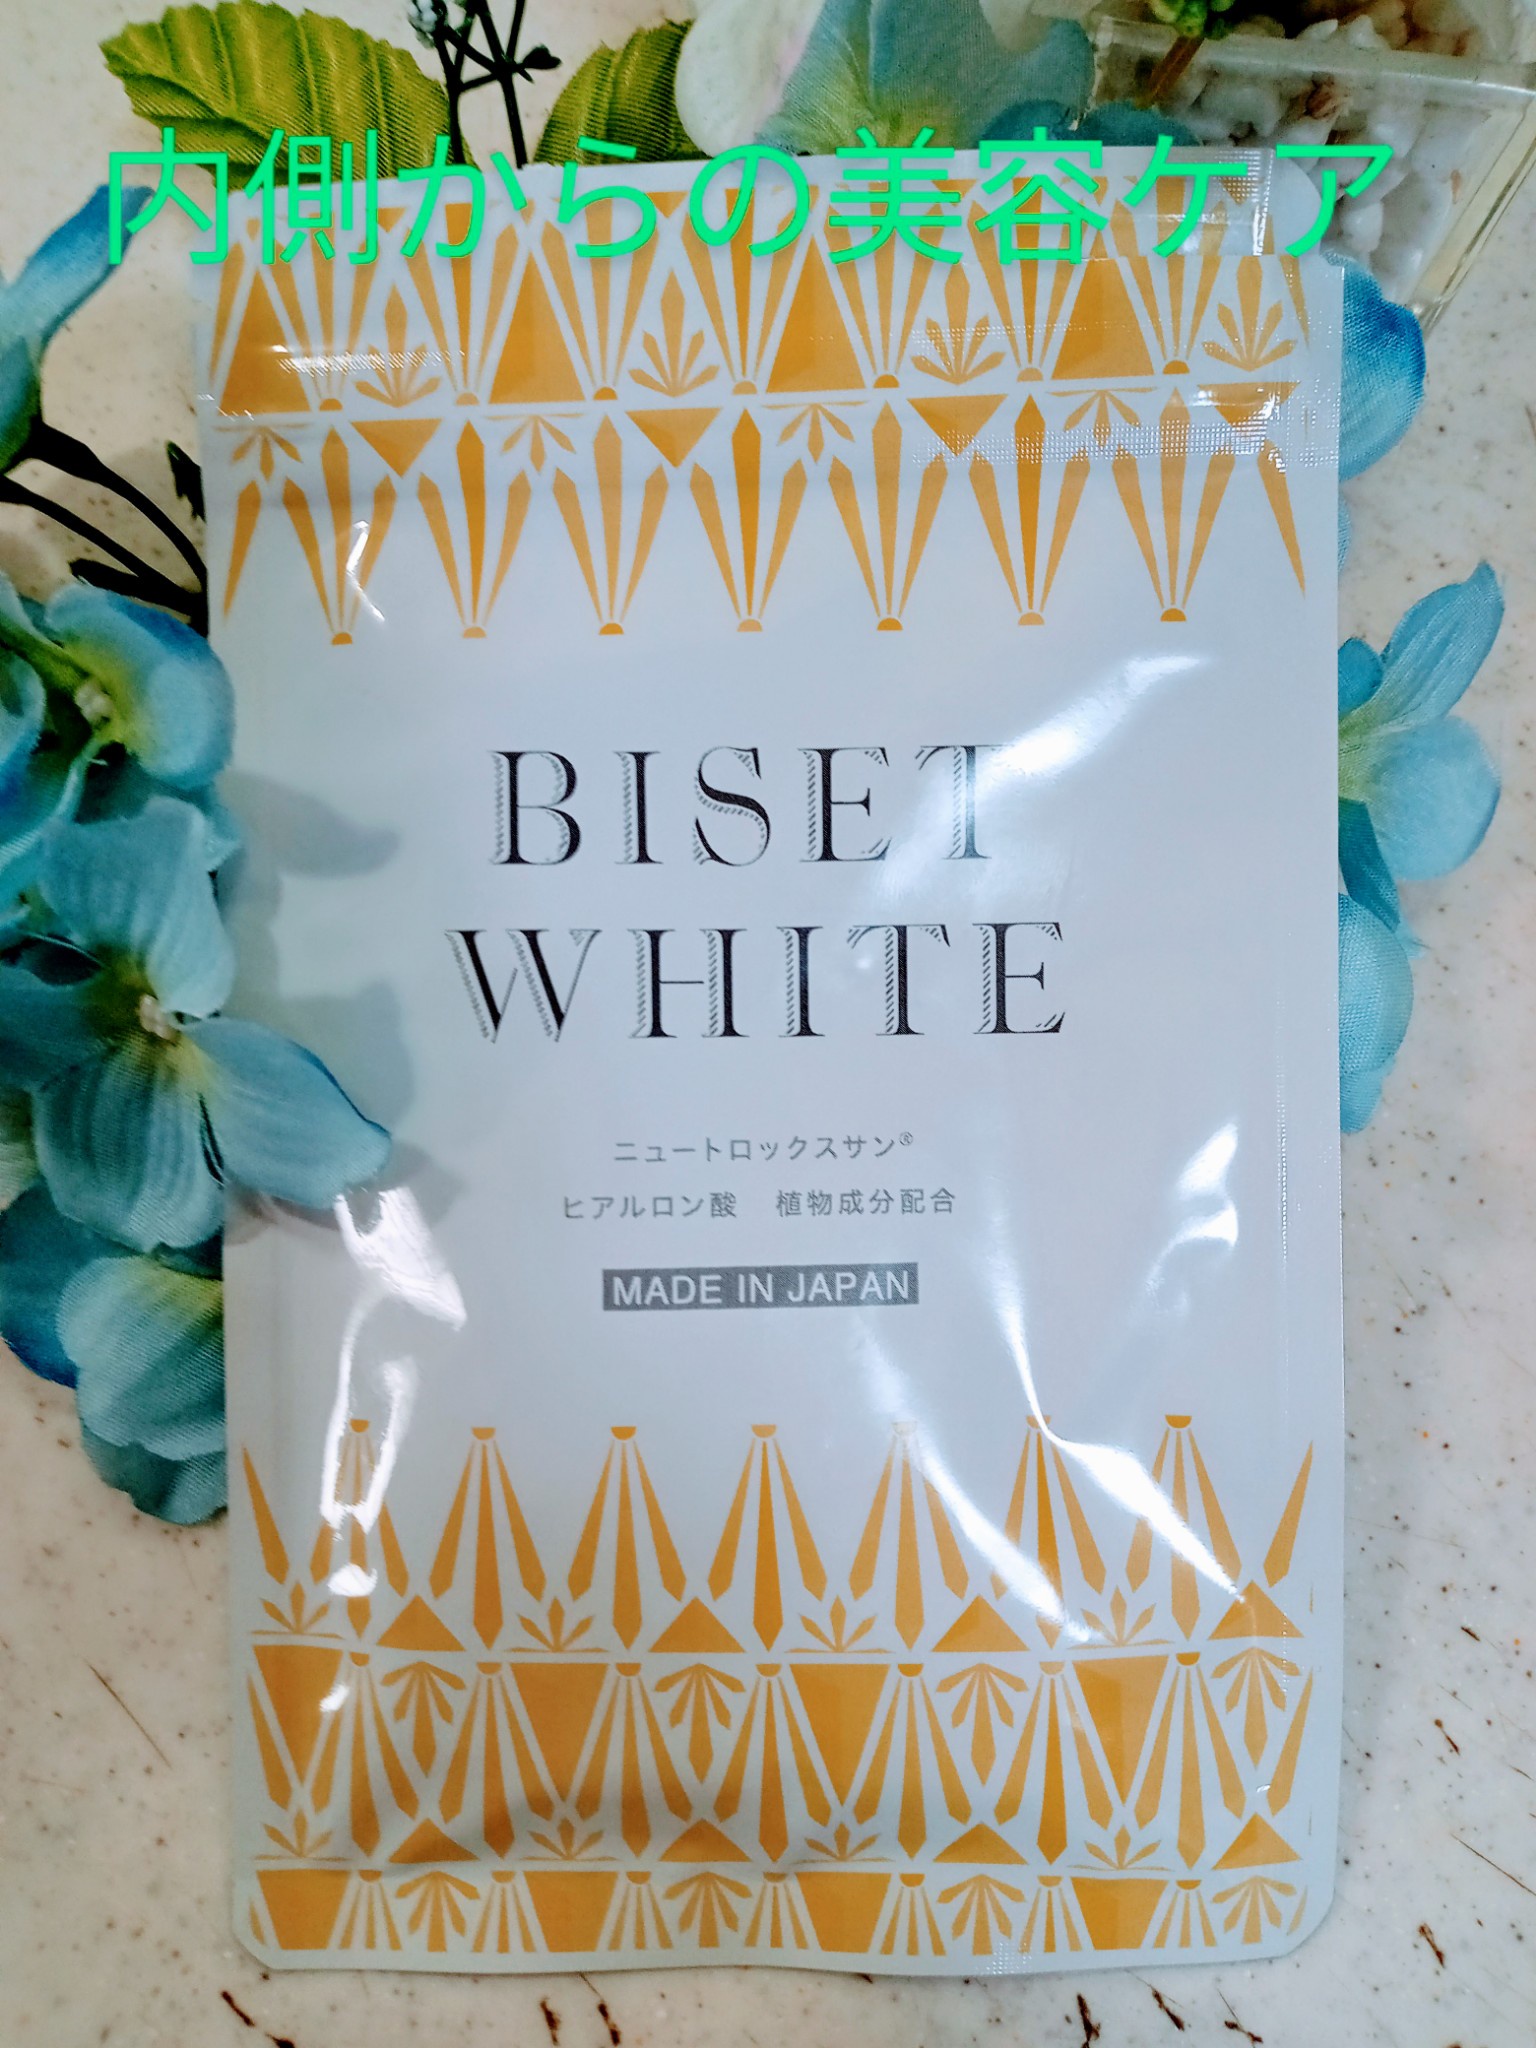 【特価限定】BISET WHITE ビセットホワイト4袋セット 日焼け止め/サンオイル